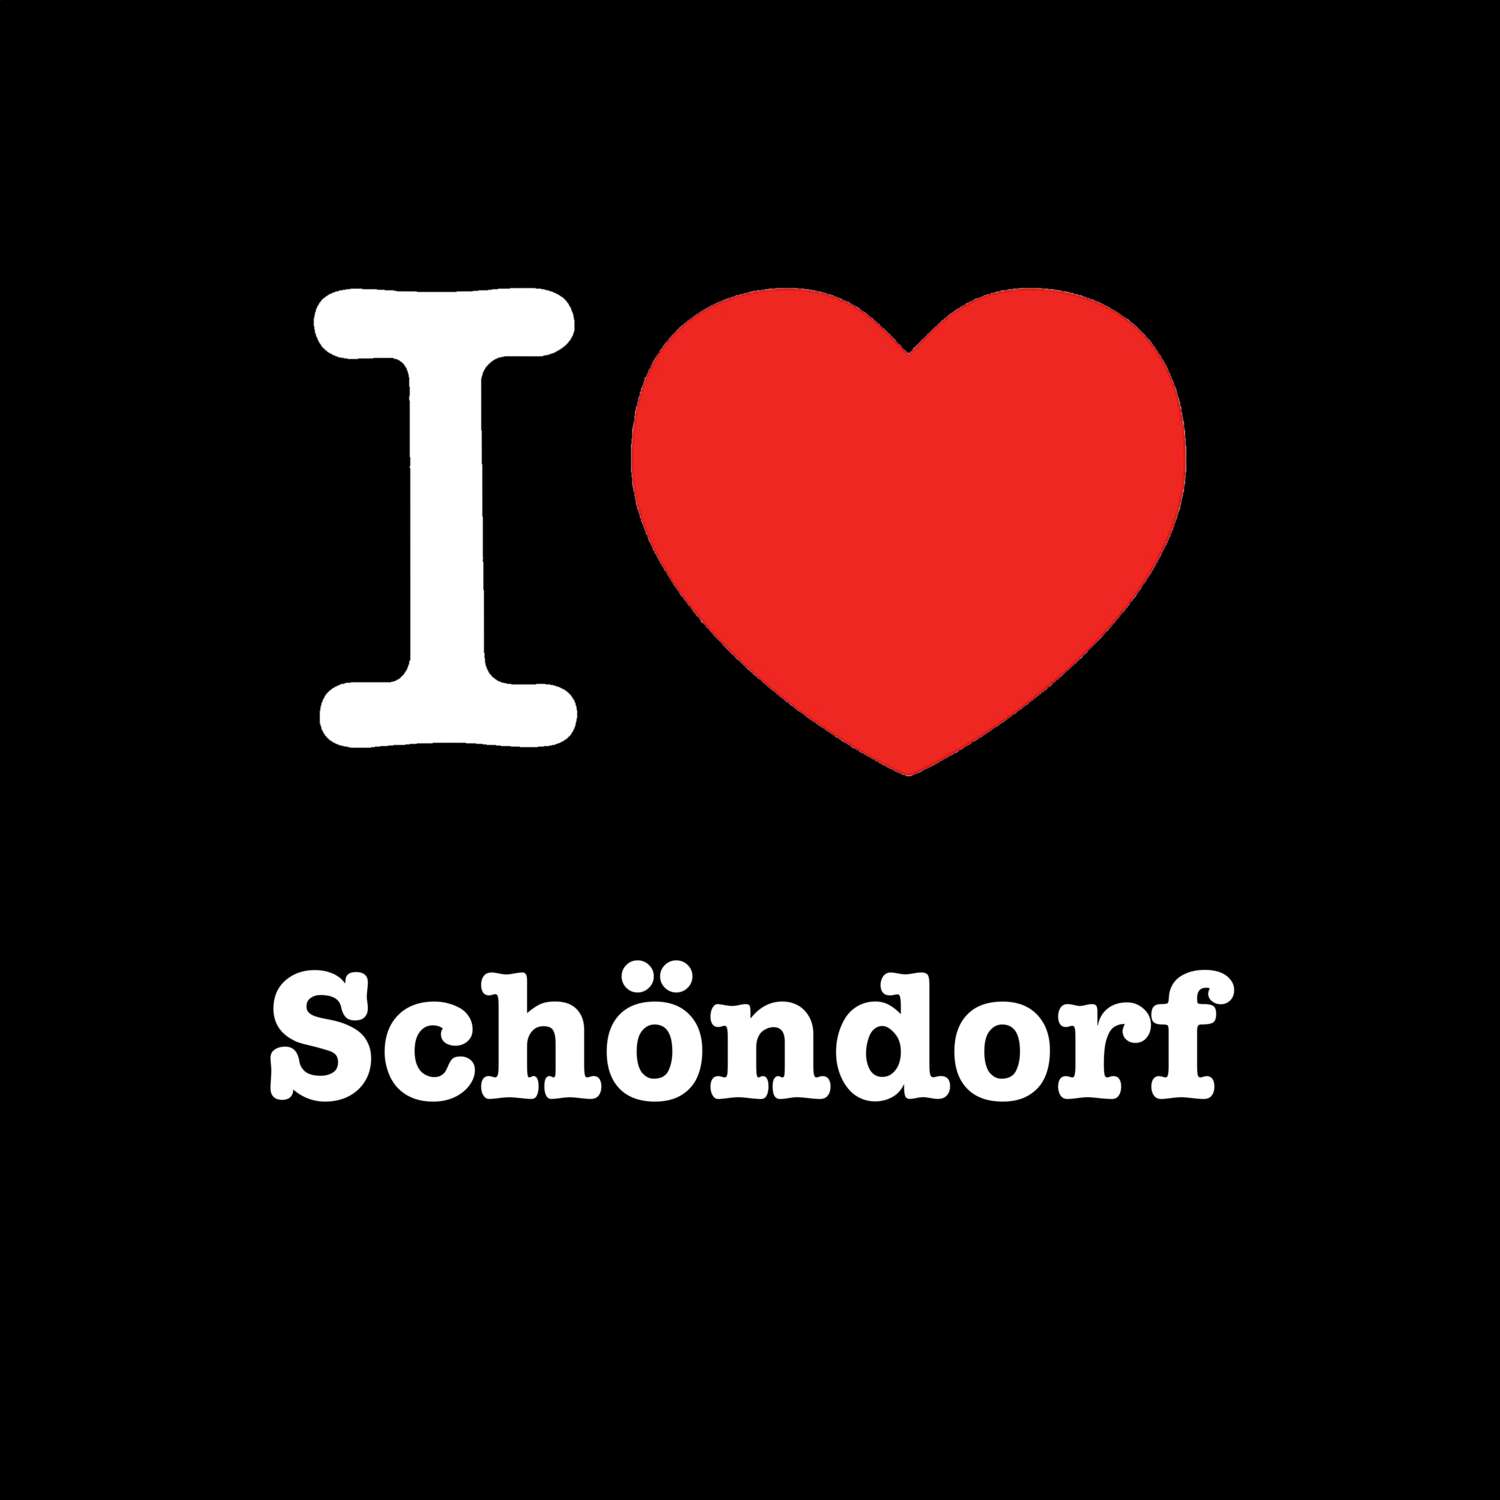 Schöndorf T-Shirt »I love«